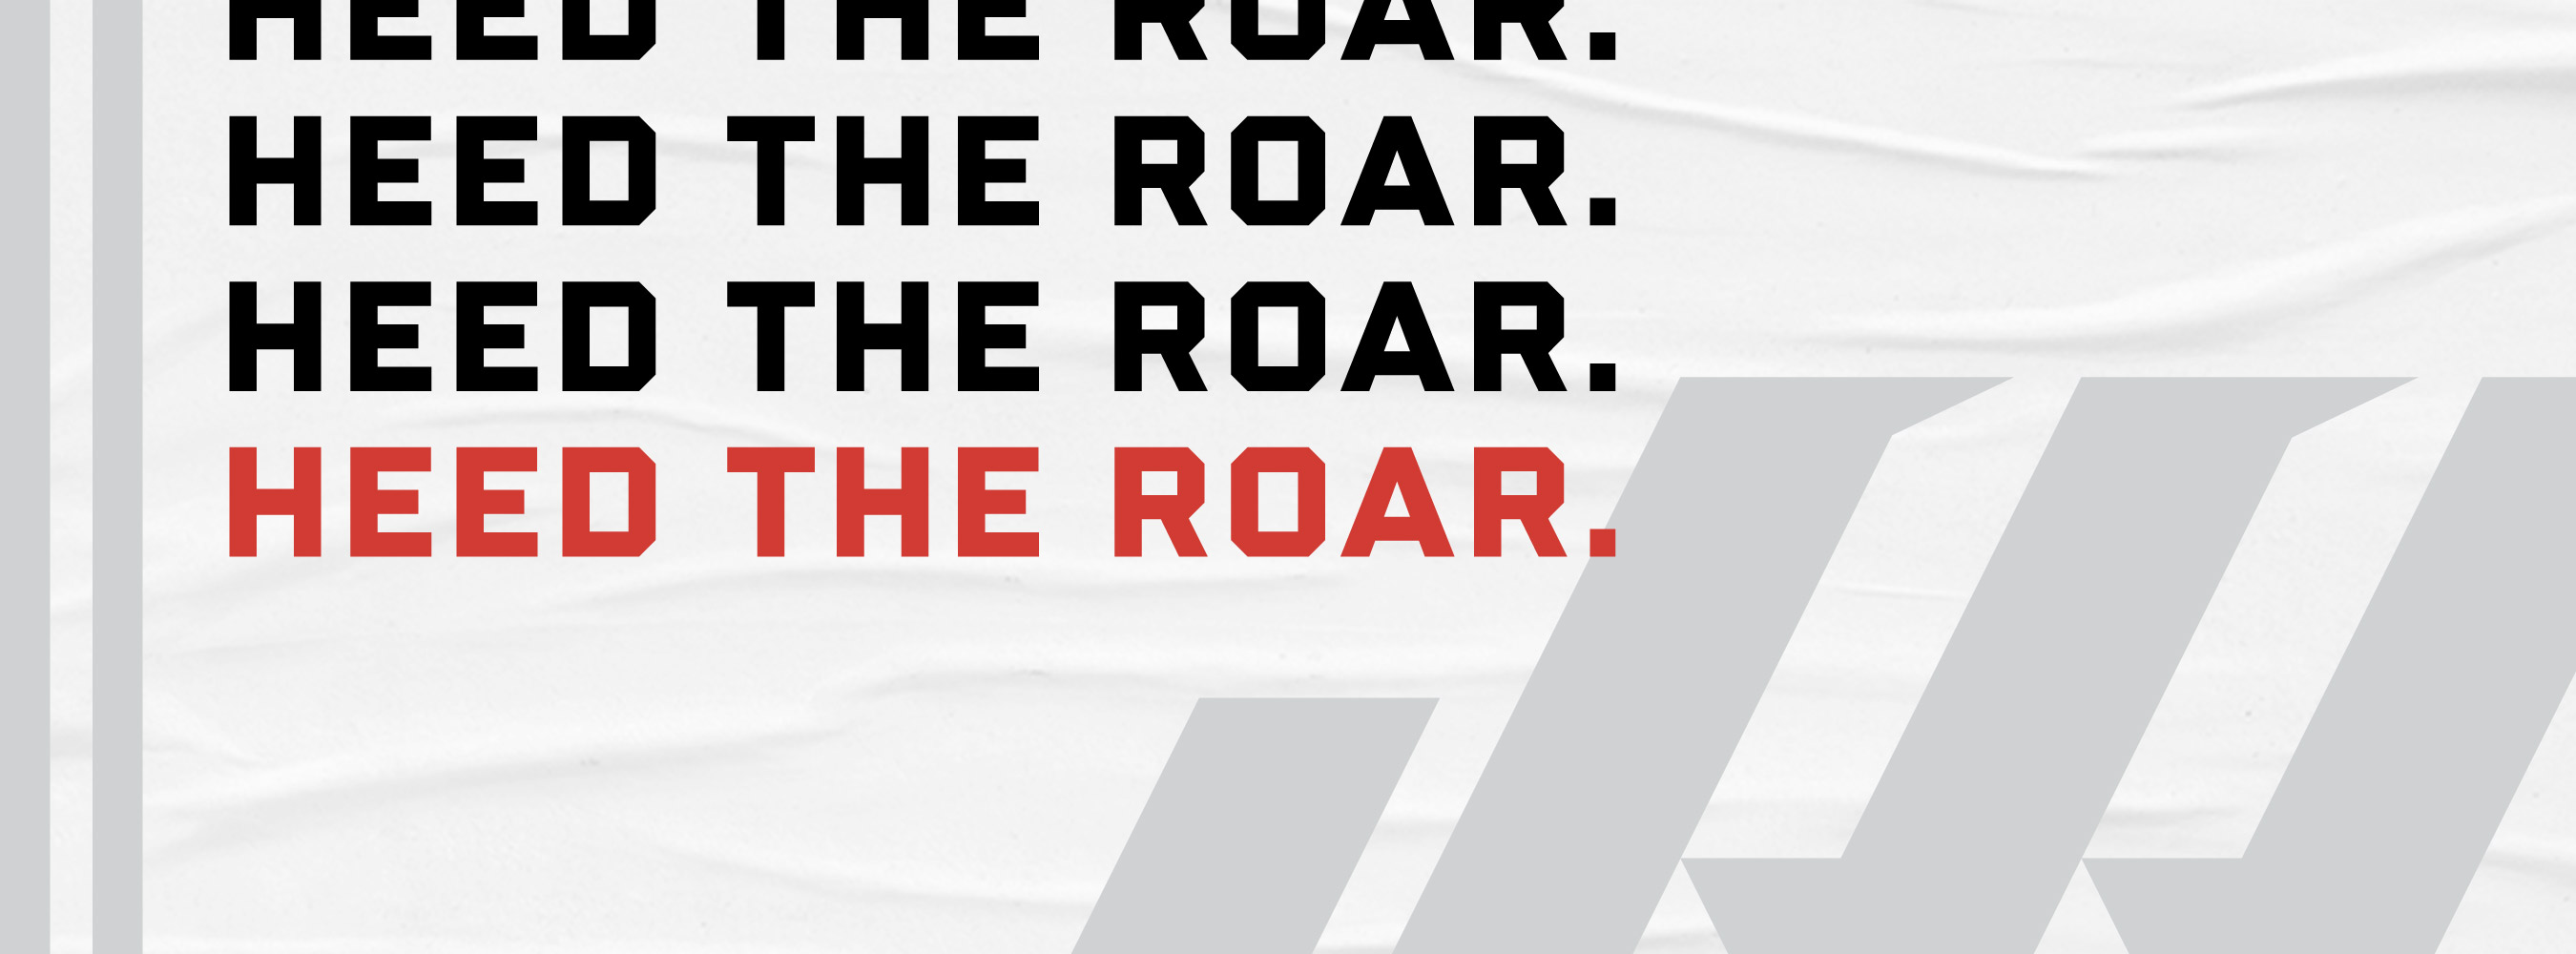 head the roar.